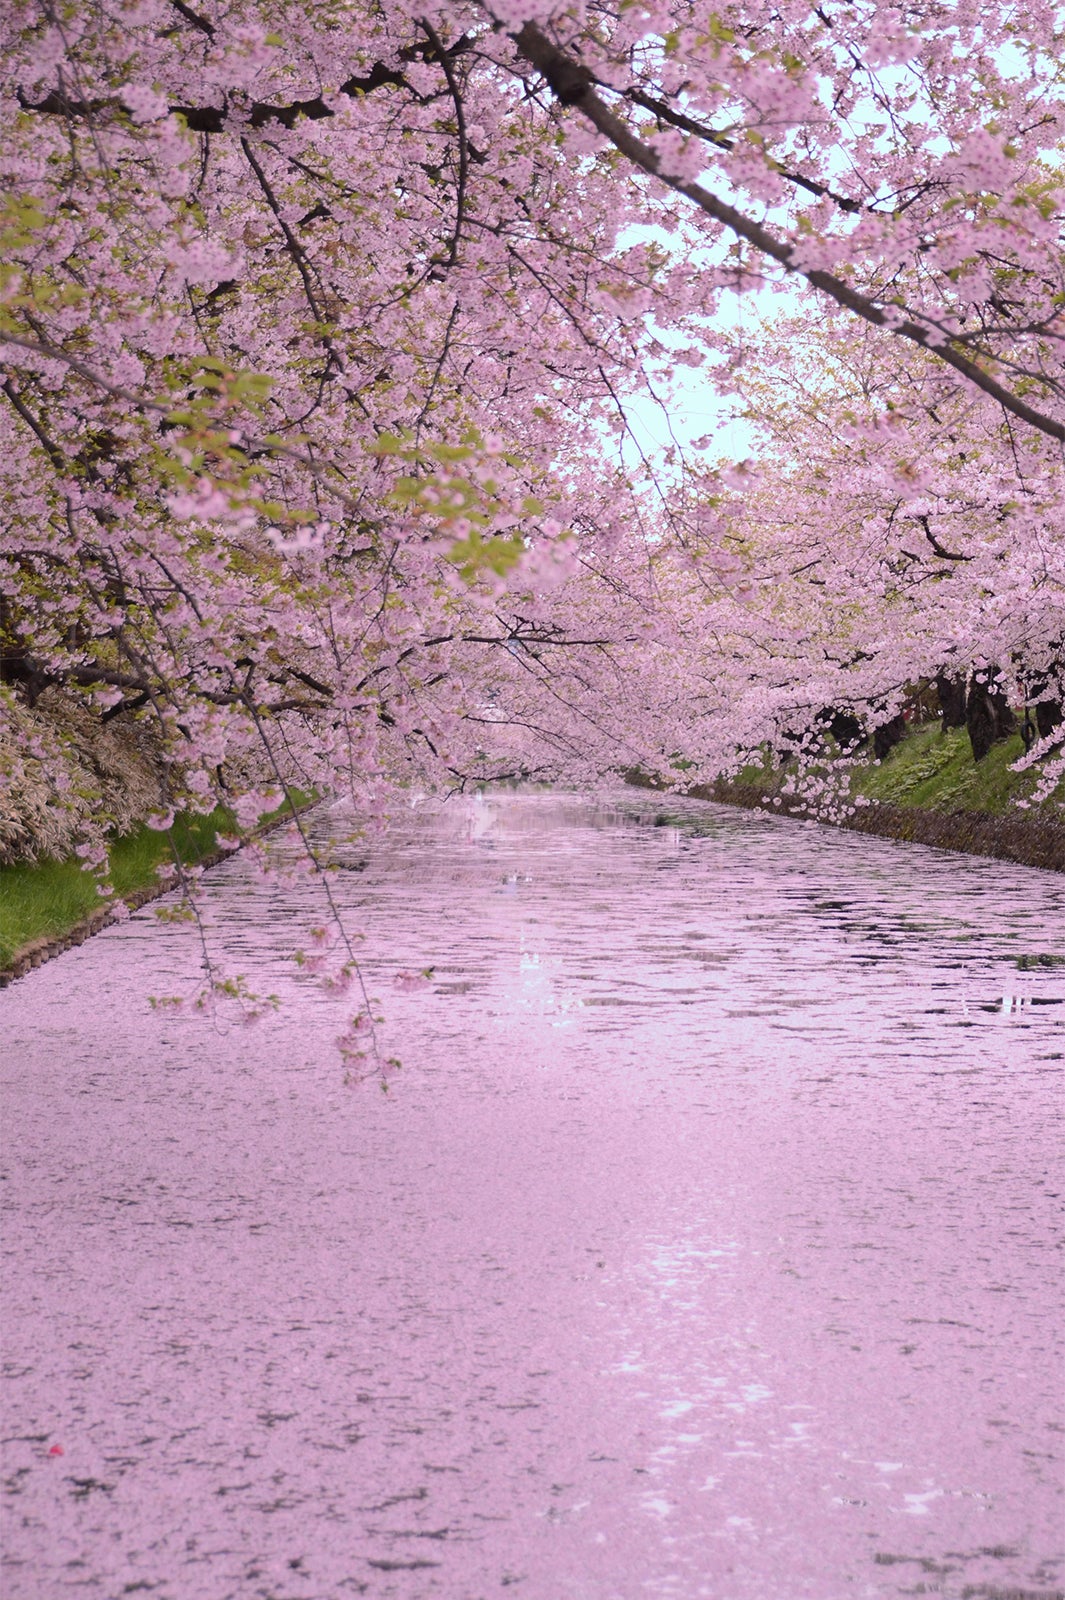 青森が誇る春の絶景 桜のじゅうたん が夢のような美しさ 女子旅プレス